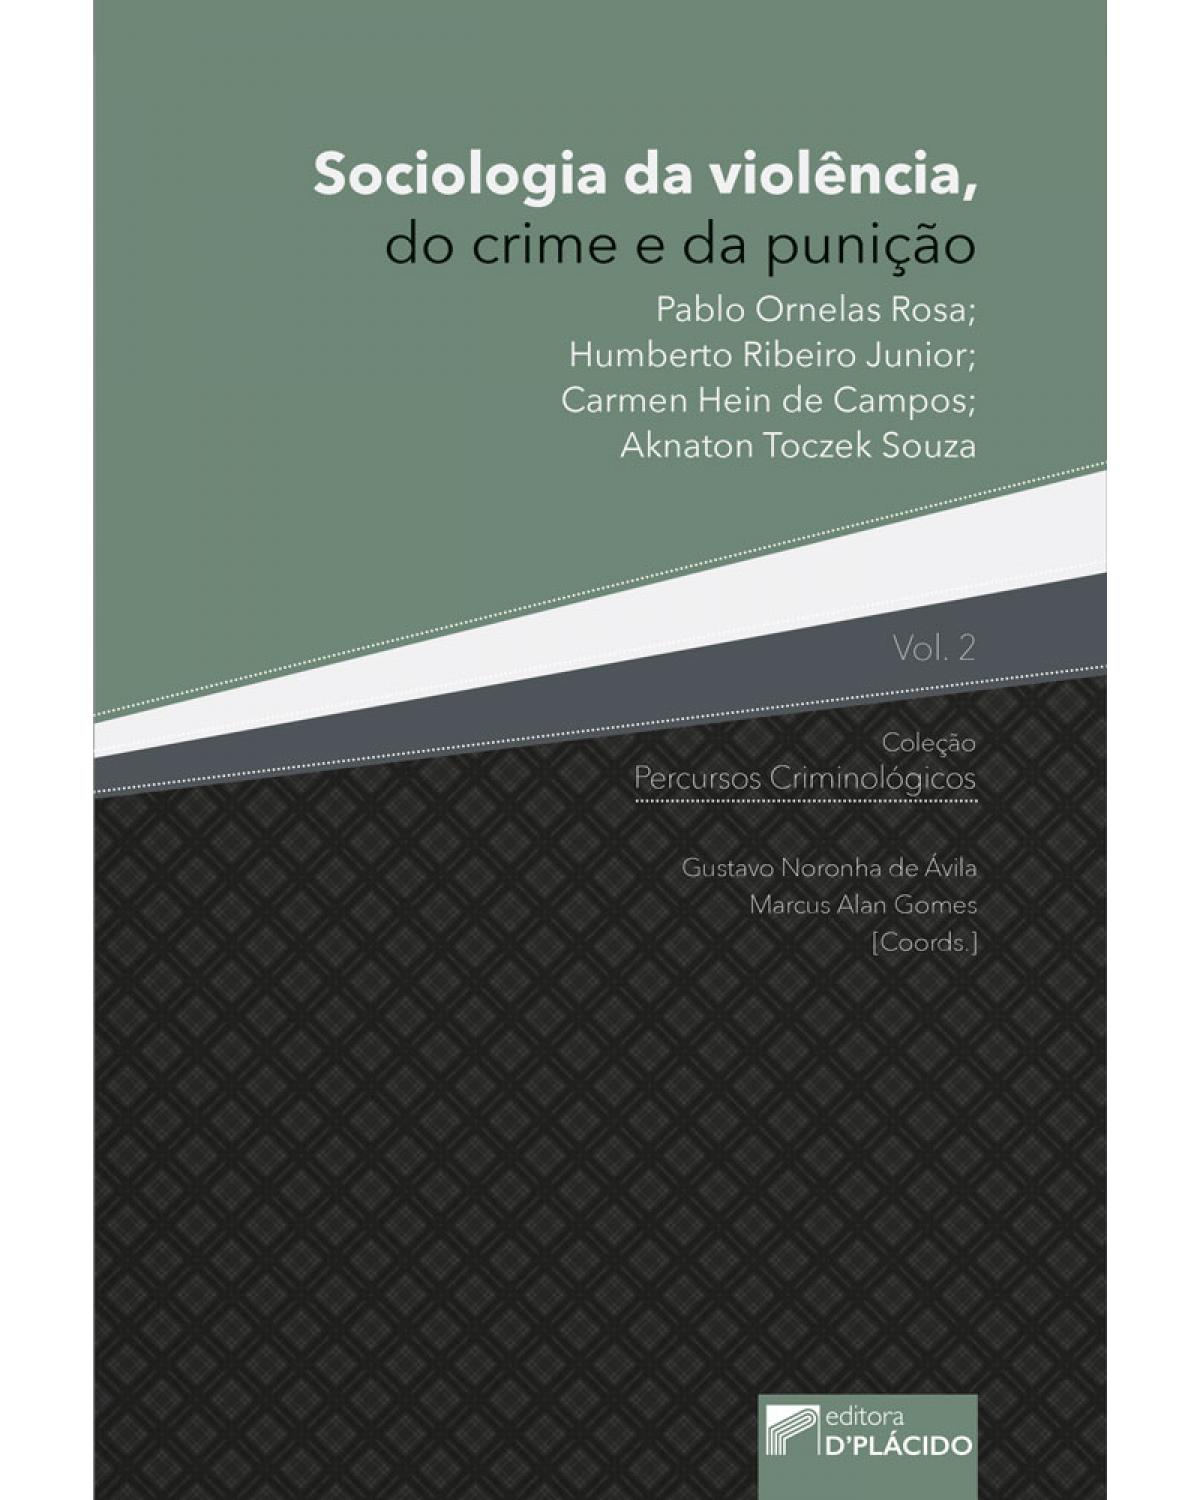 Sociologia da violência, do crime e da punição - Volume 2:  - 1ª Edição | 2017